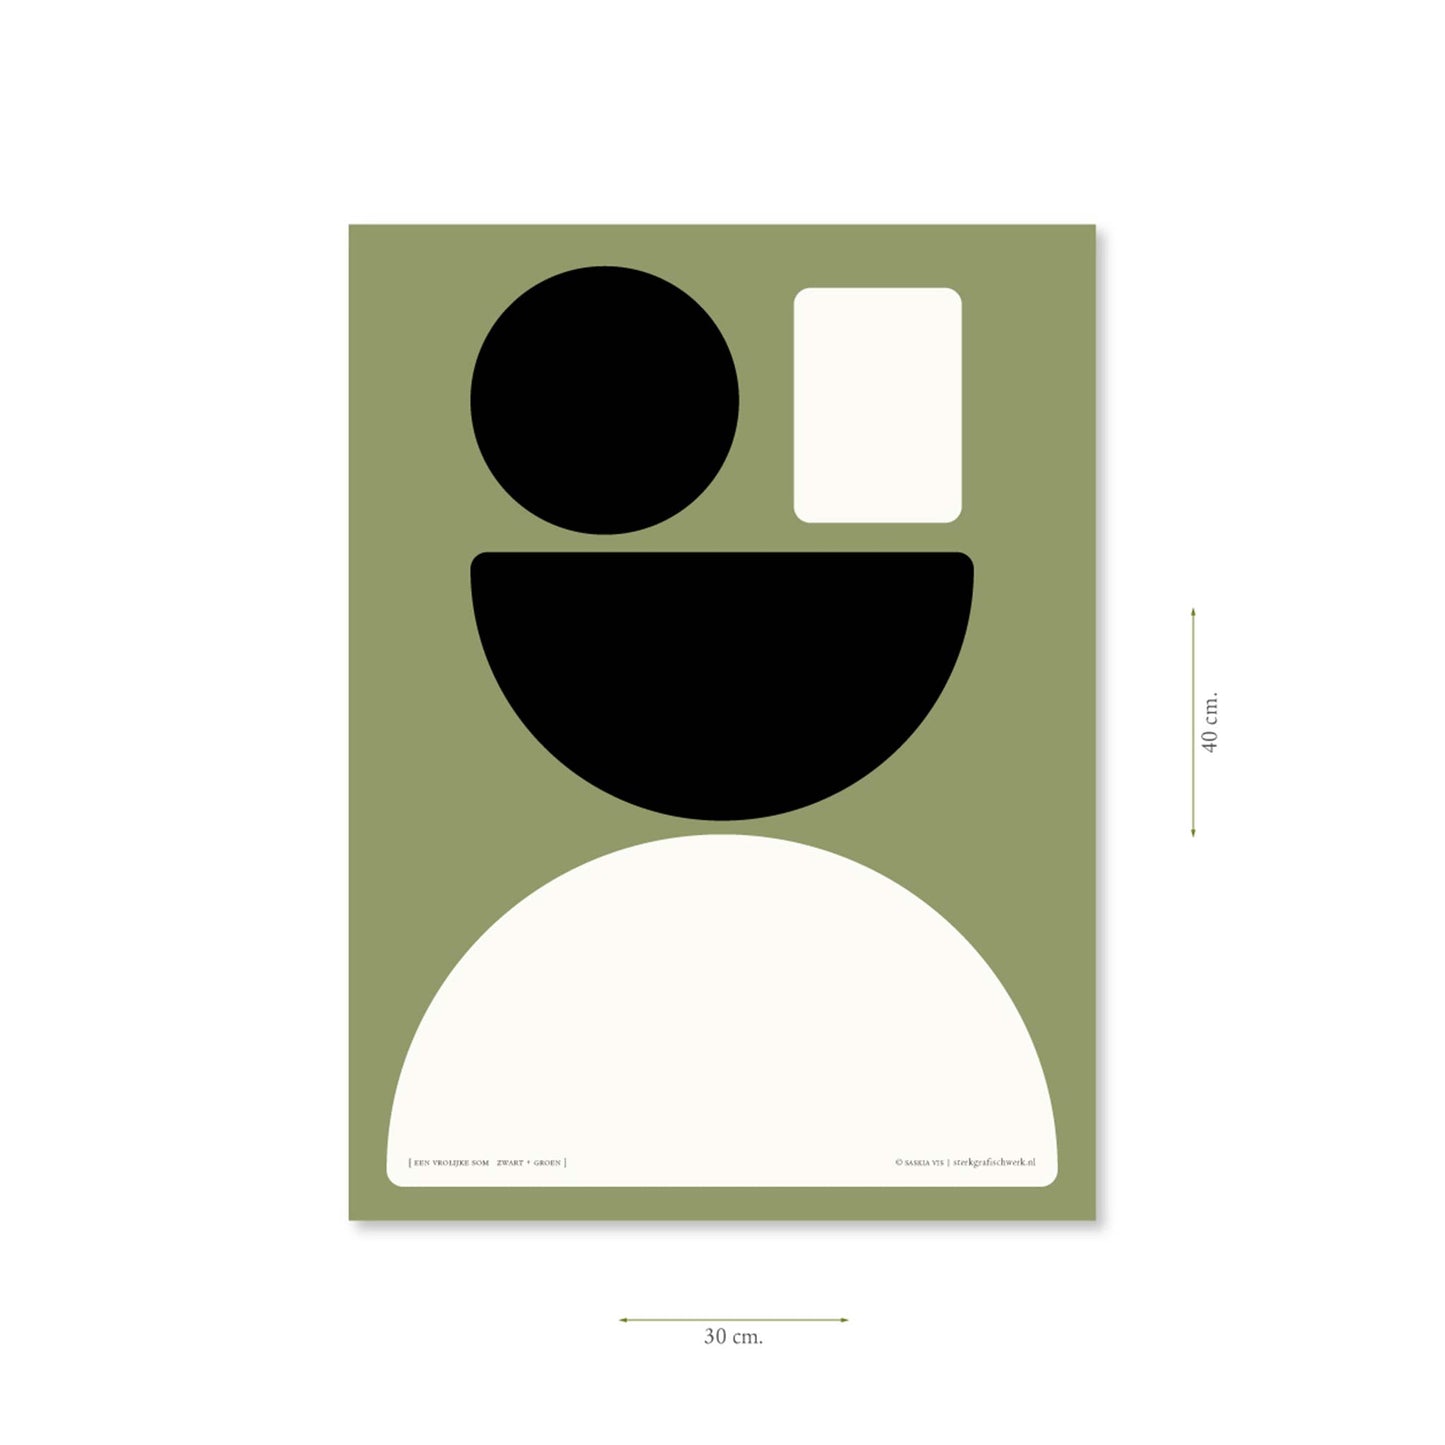 Productafbeelding, poster "een vrolijke som zwart+groen", met aanduiding van het formaat erop weergegeven 30 x 40 cm